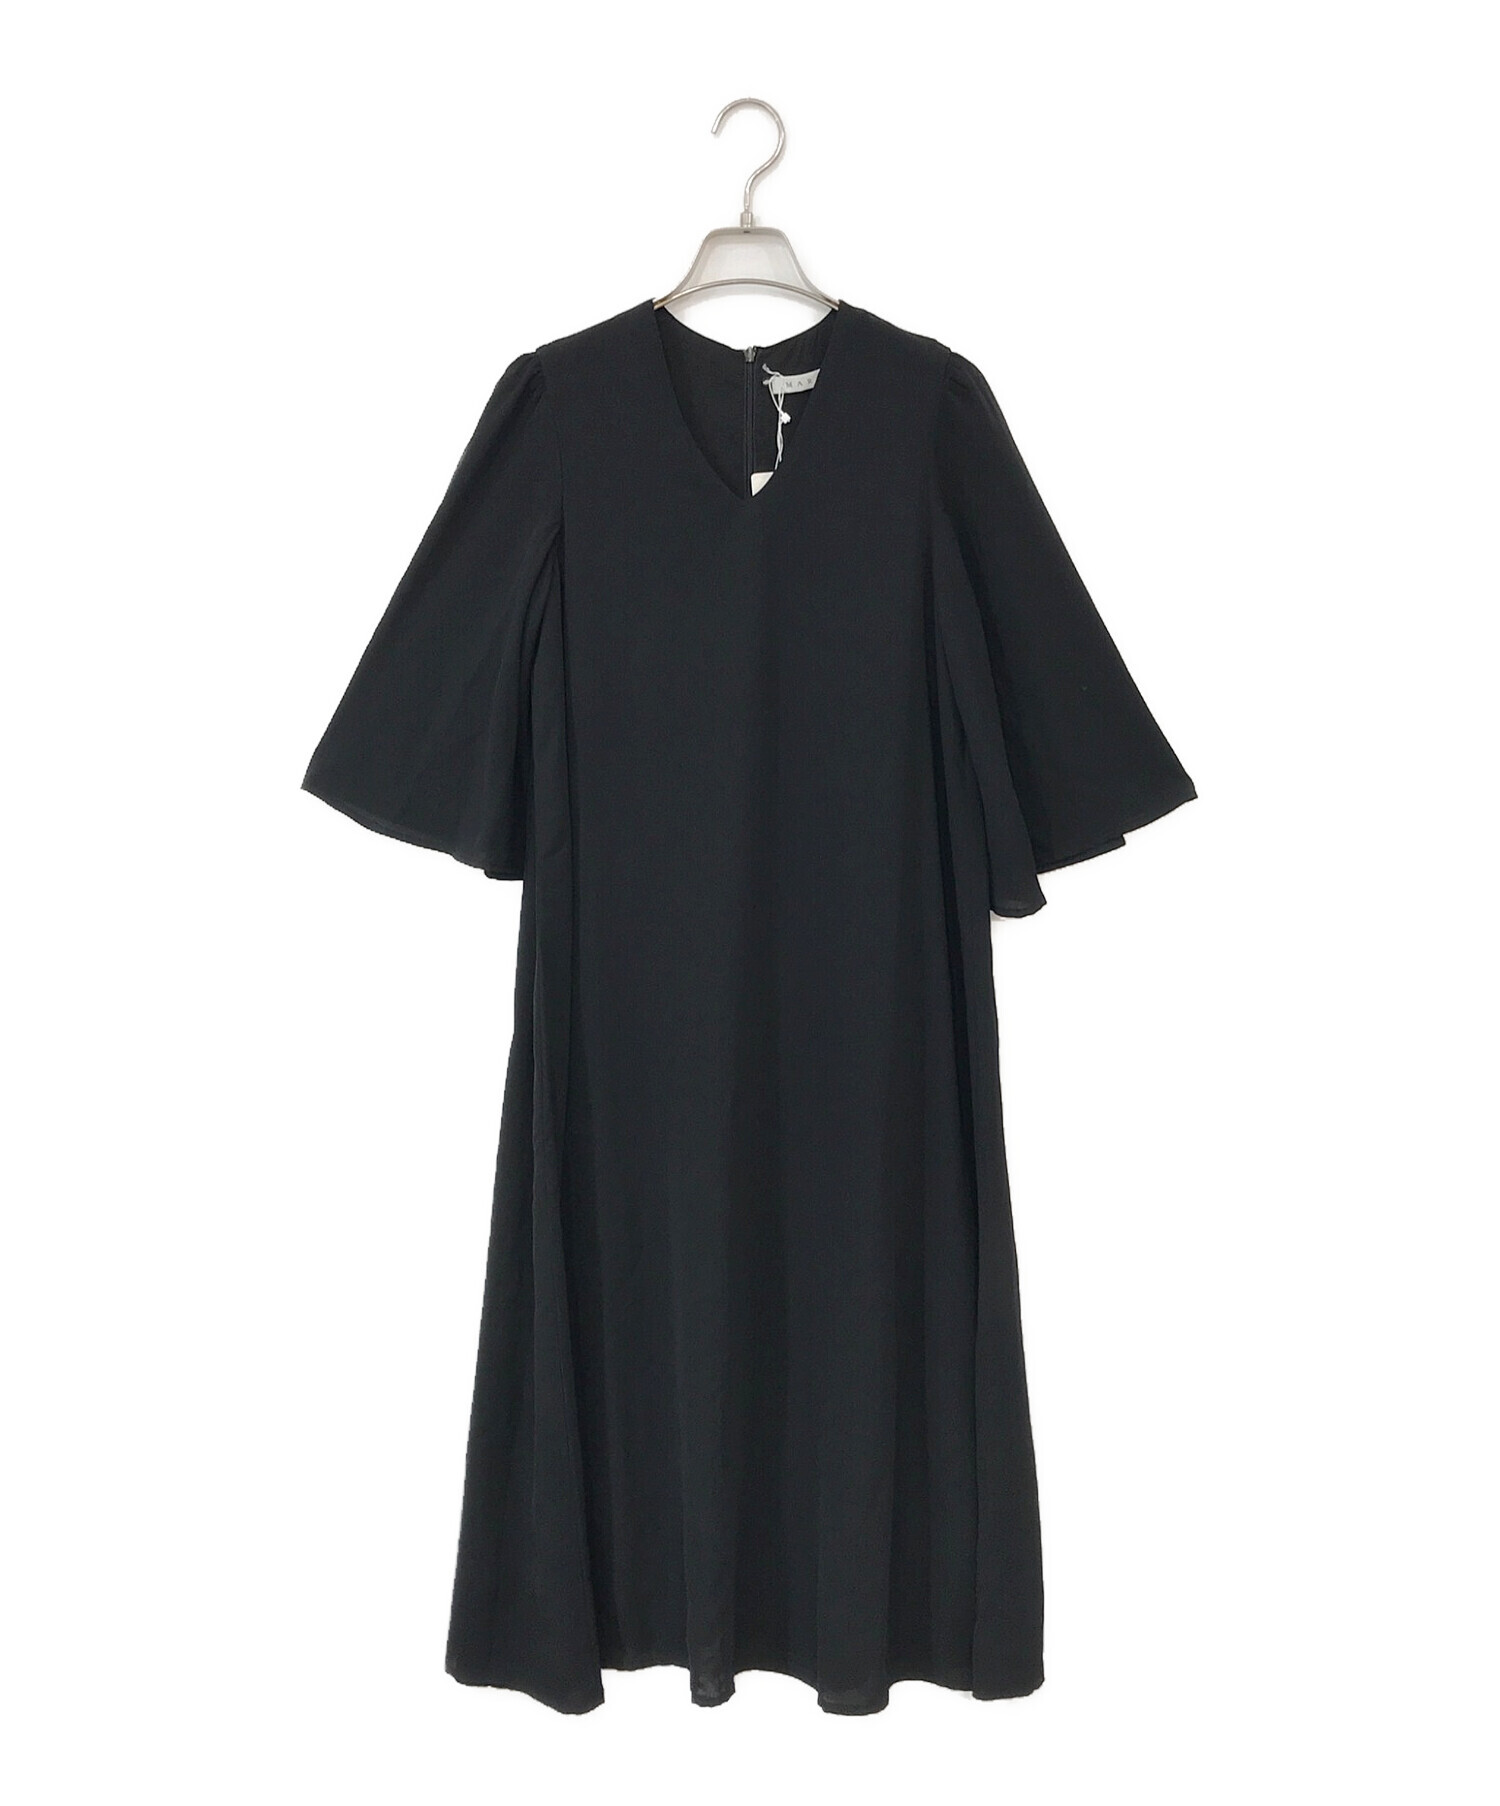 MARIHA (マリハ) 夜のドレス ブラック サイズ:36